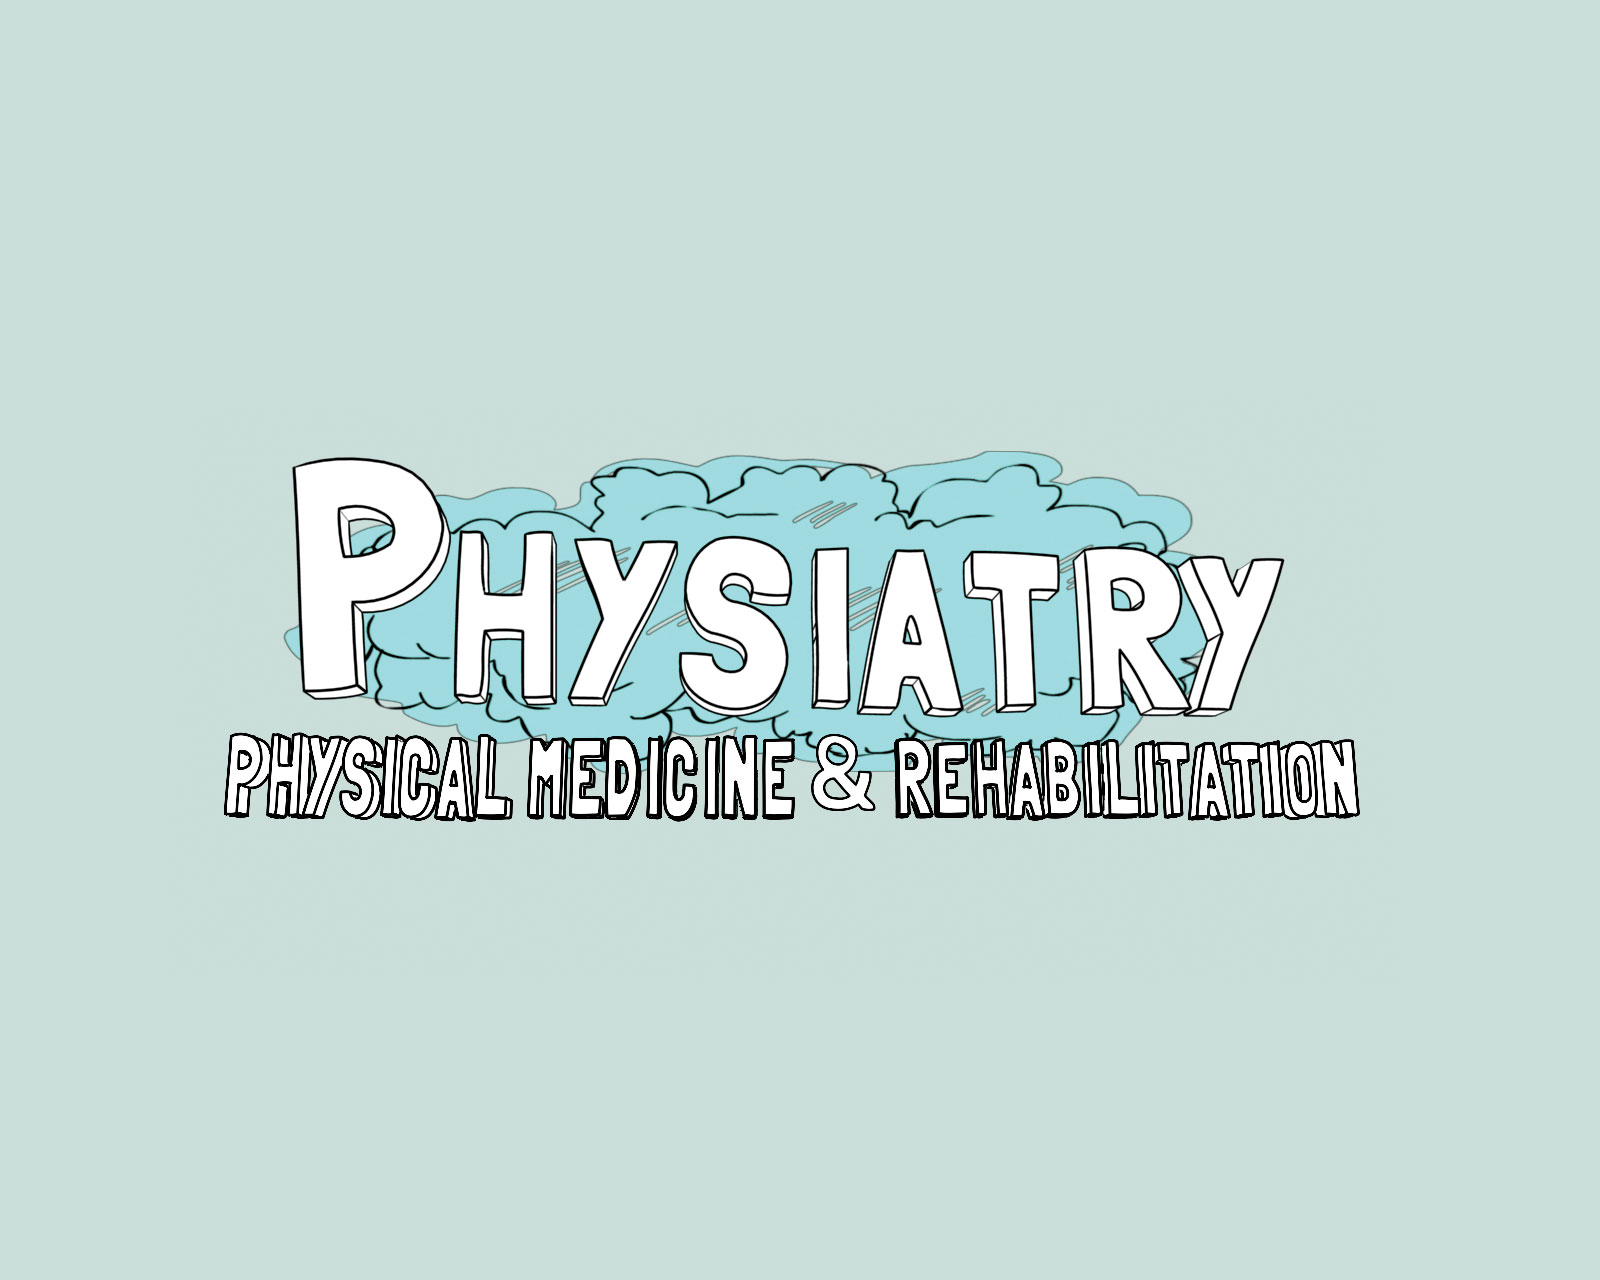 Physiatry. Medicine. Animation. Creative Studio providing animation and branding services in CA, NYC, OKC, Paris, Colorado, Tokyo. ColorfulStudio.com